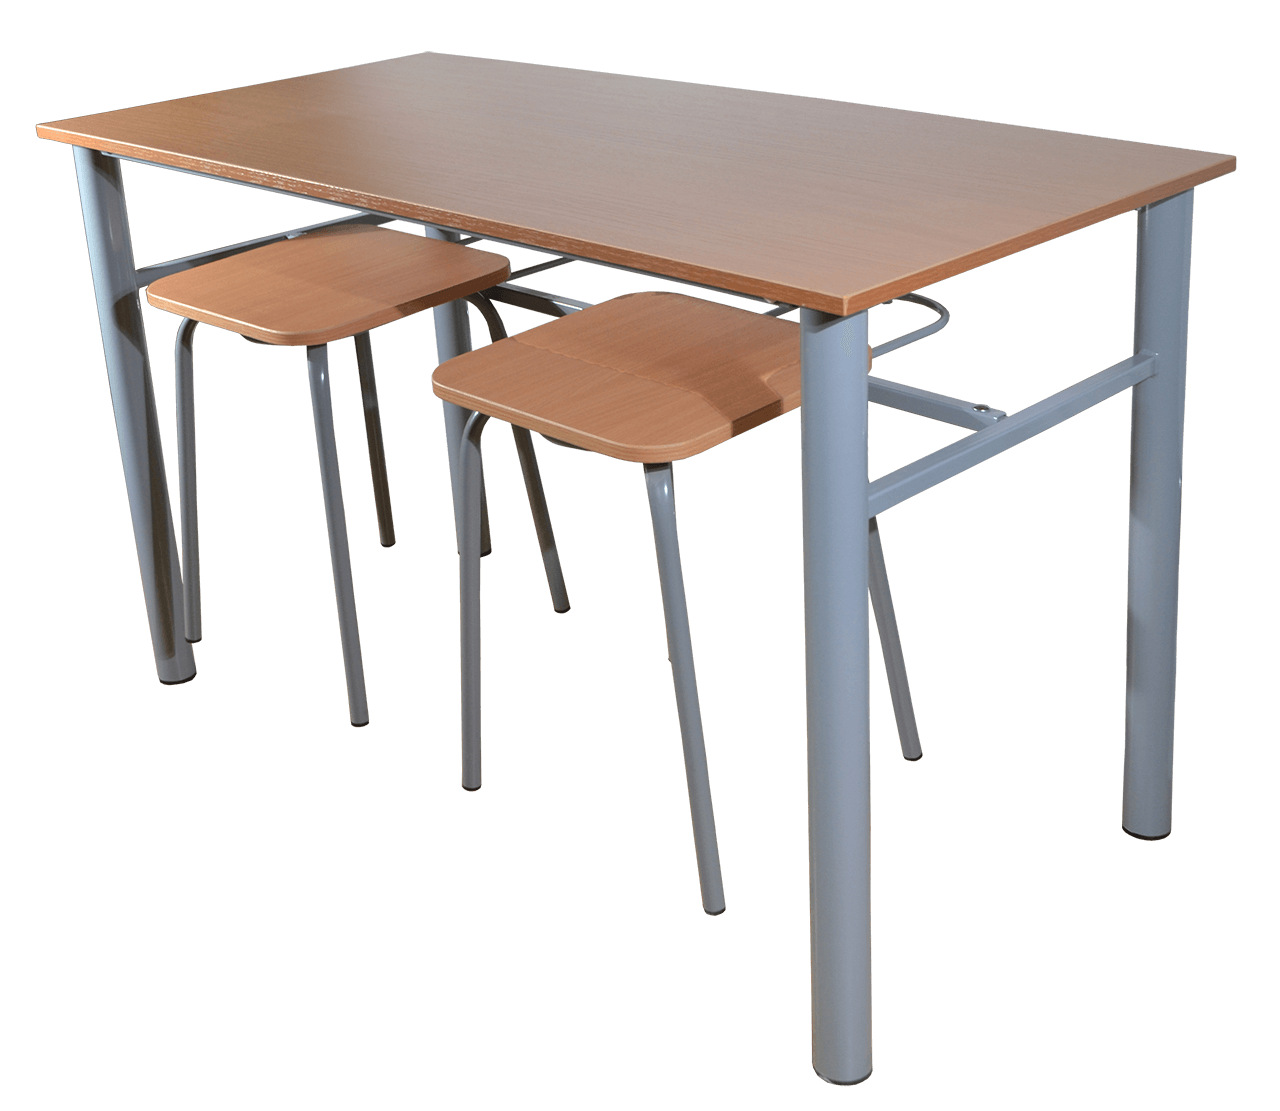 Стол для столовой 6 местный. Стол для столовой 6-местный h174011. Комплект мебели для школьной столовой КШМС-06а. Мебель для столовой школы. Стол в школьную столовую.